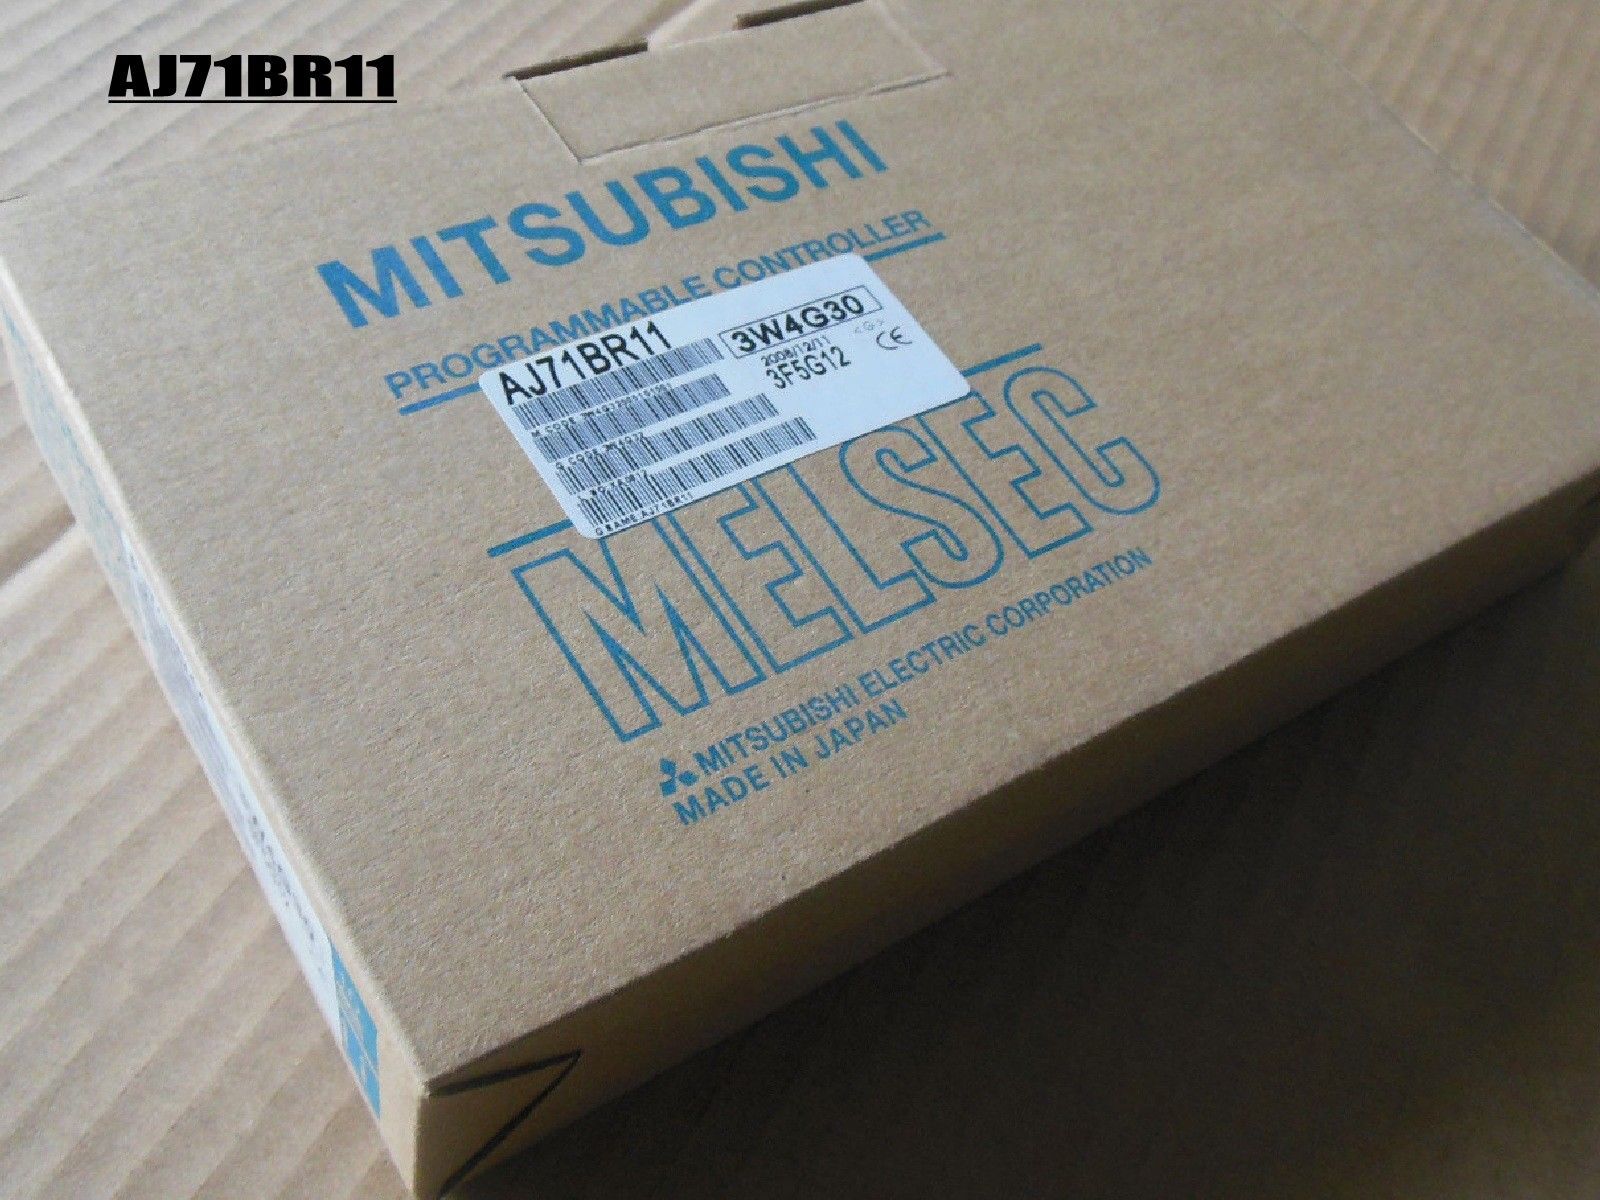 NEW MITSUBISHI Programmable Controller MODULE AJ71BR11 IN BOX - Click Image to Close